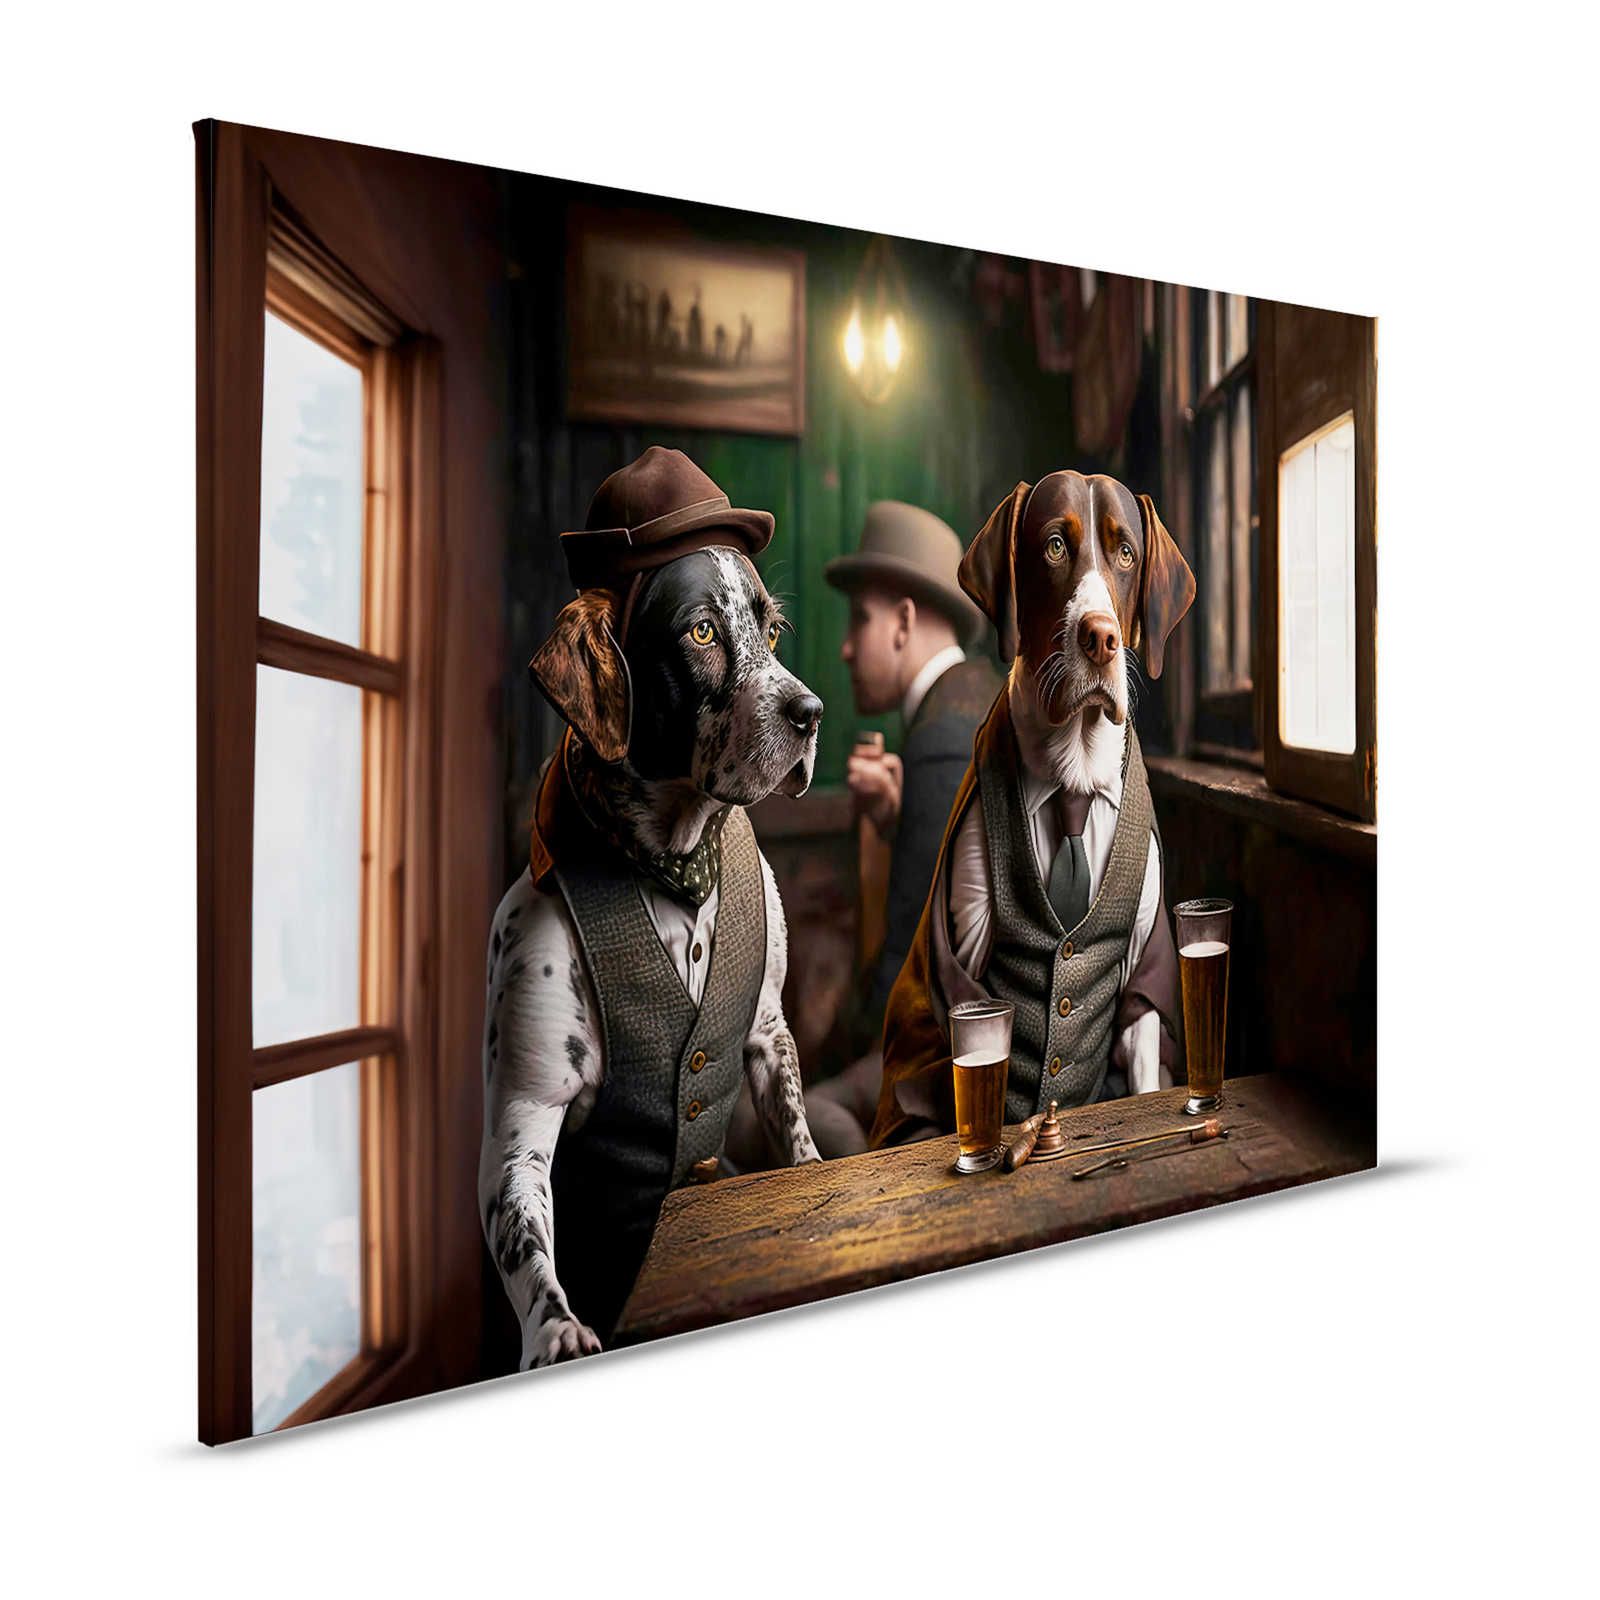 KI Canvas painting »Doggy Bar« - 120 cm x 80 cm
